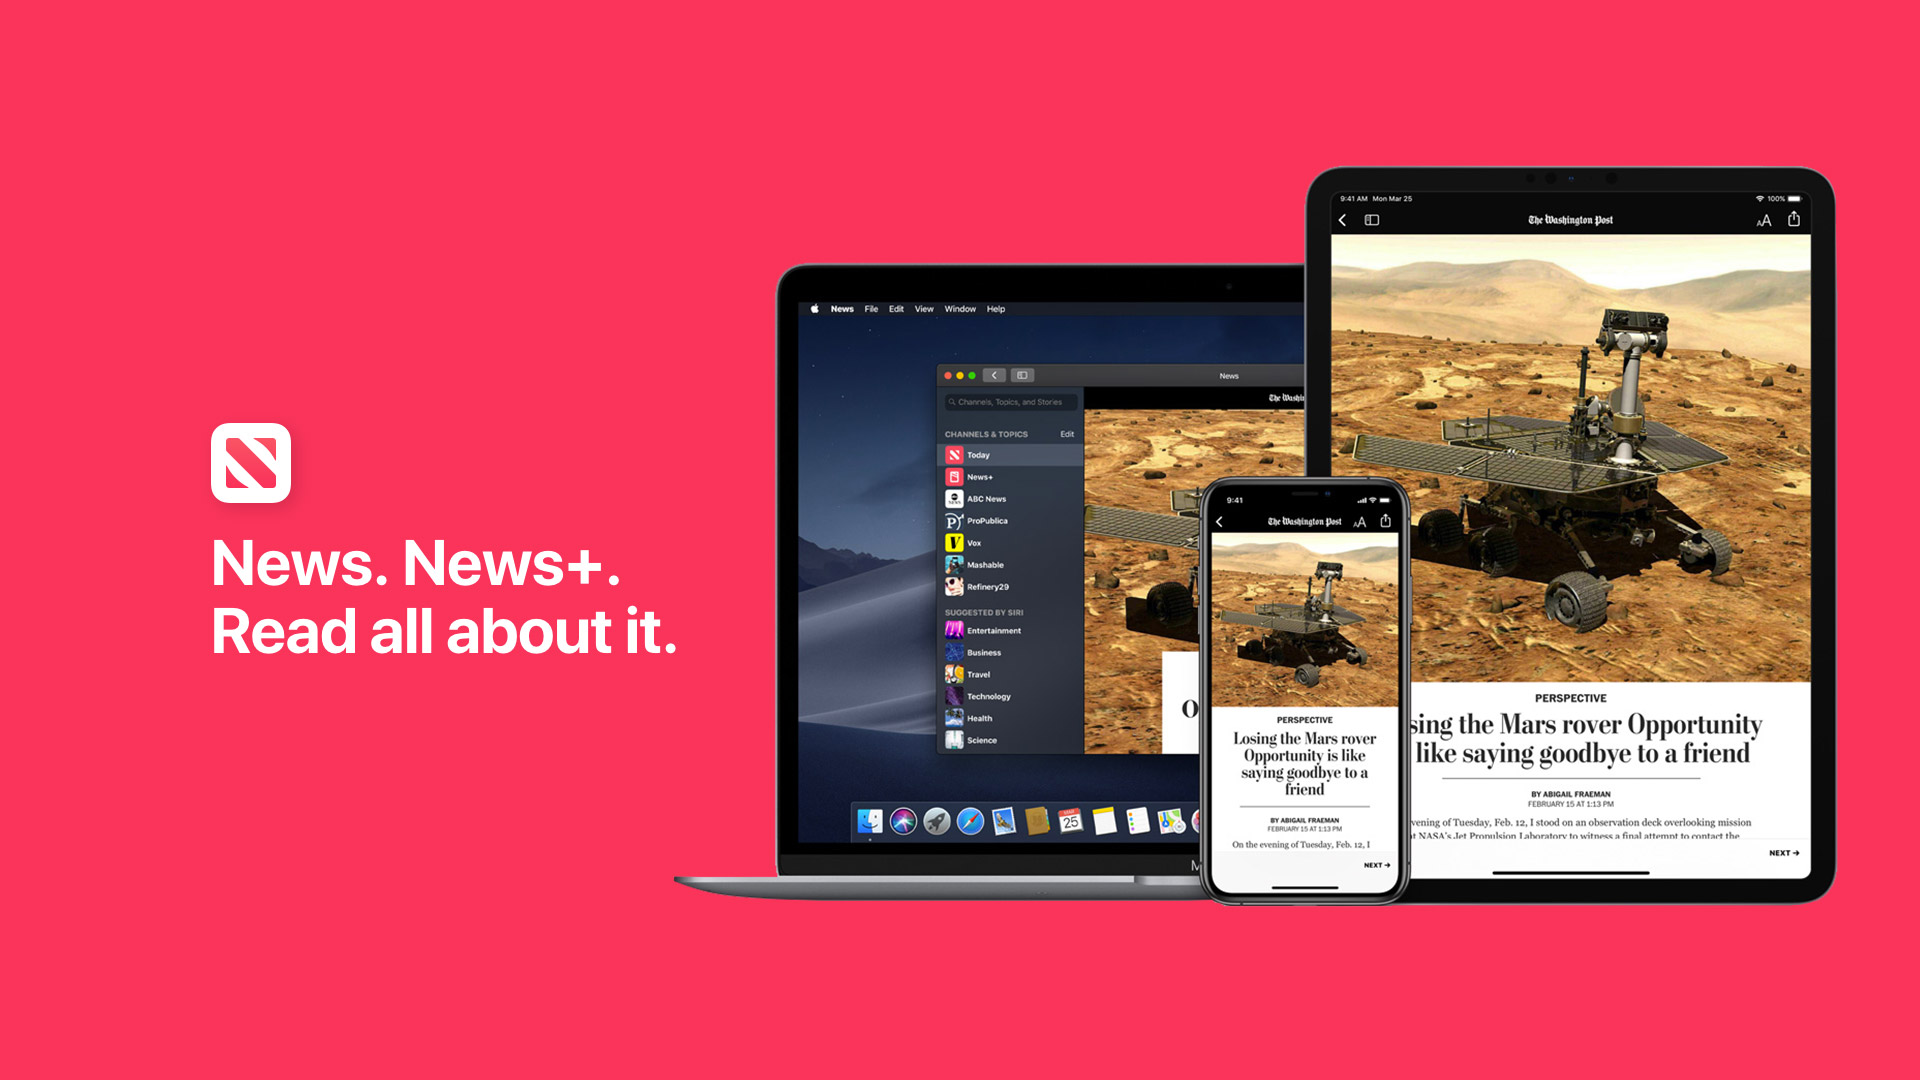 Apple News brez »+«: založniki in uporabniki se pritožujejo zaradi napak in napak